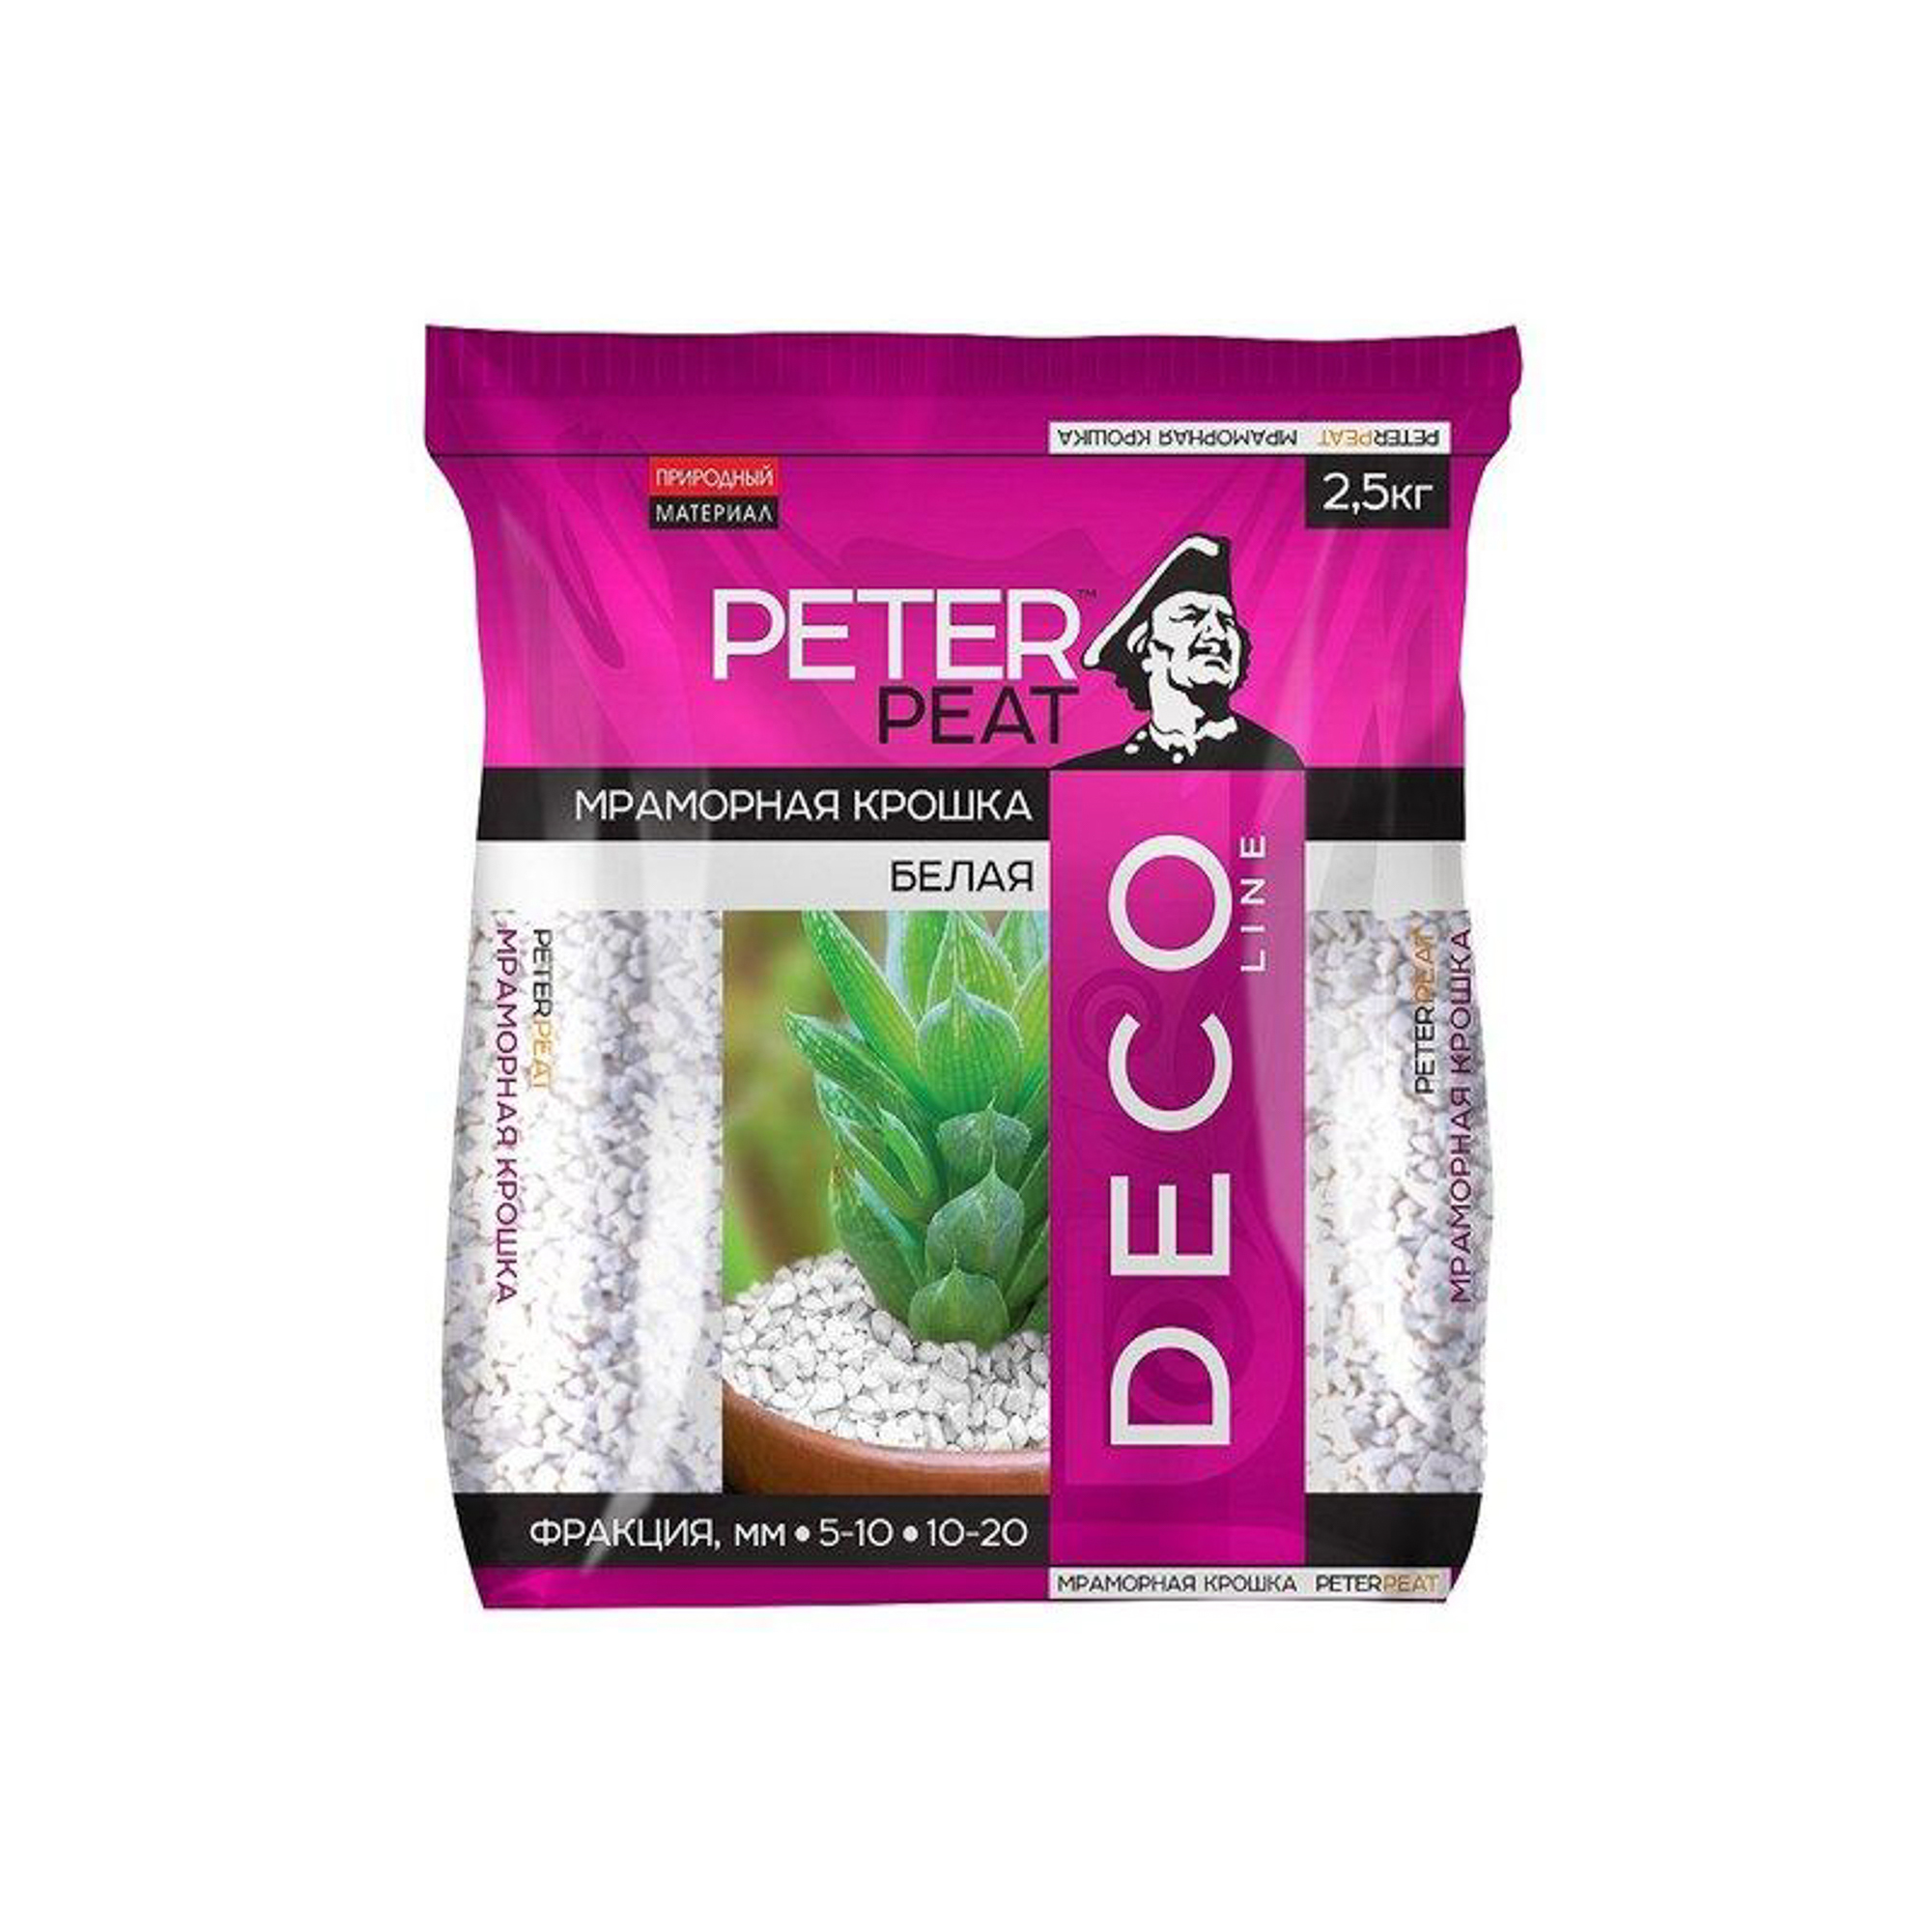 мраморная крошка peter peat светло серая фр 5 10 мм линия вита 15 кг Крошка мраморная белая мелкая Вита 2.5 кг Peter Peat